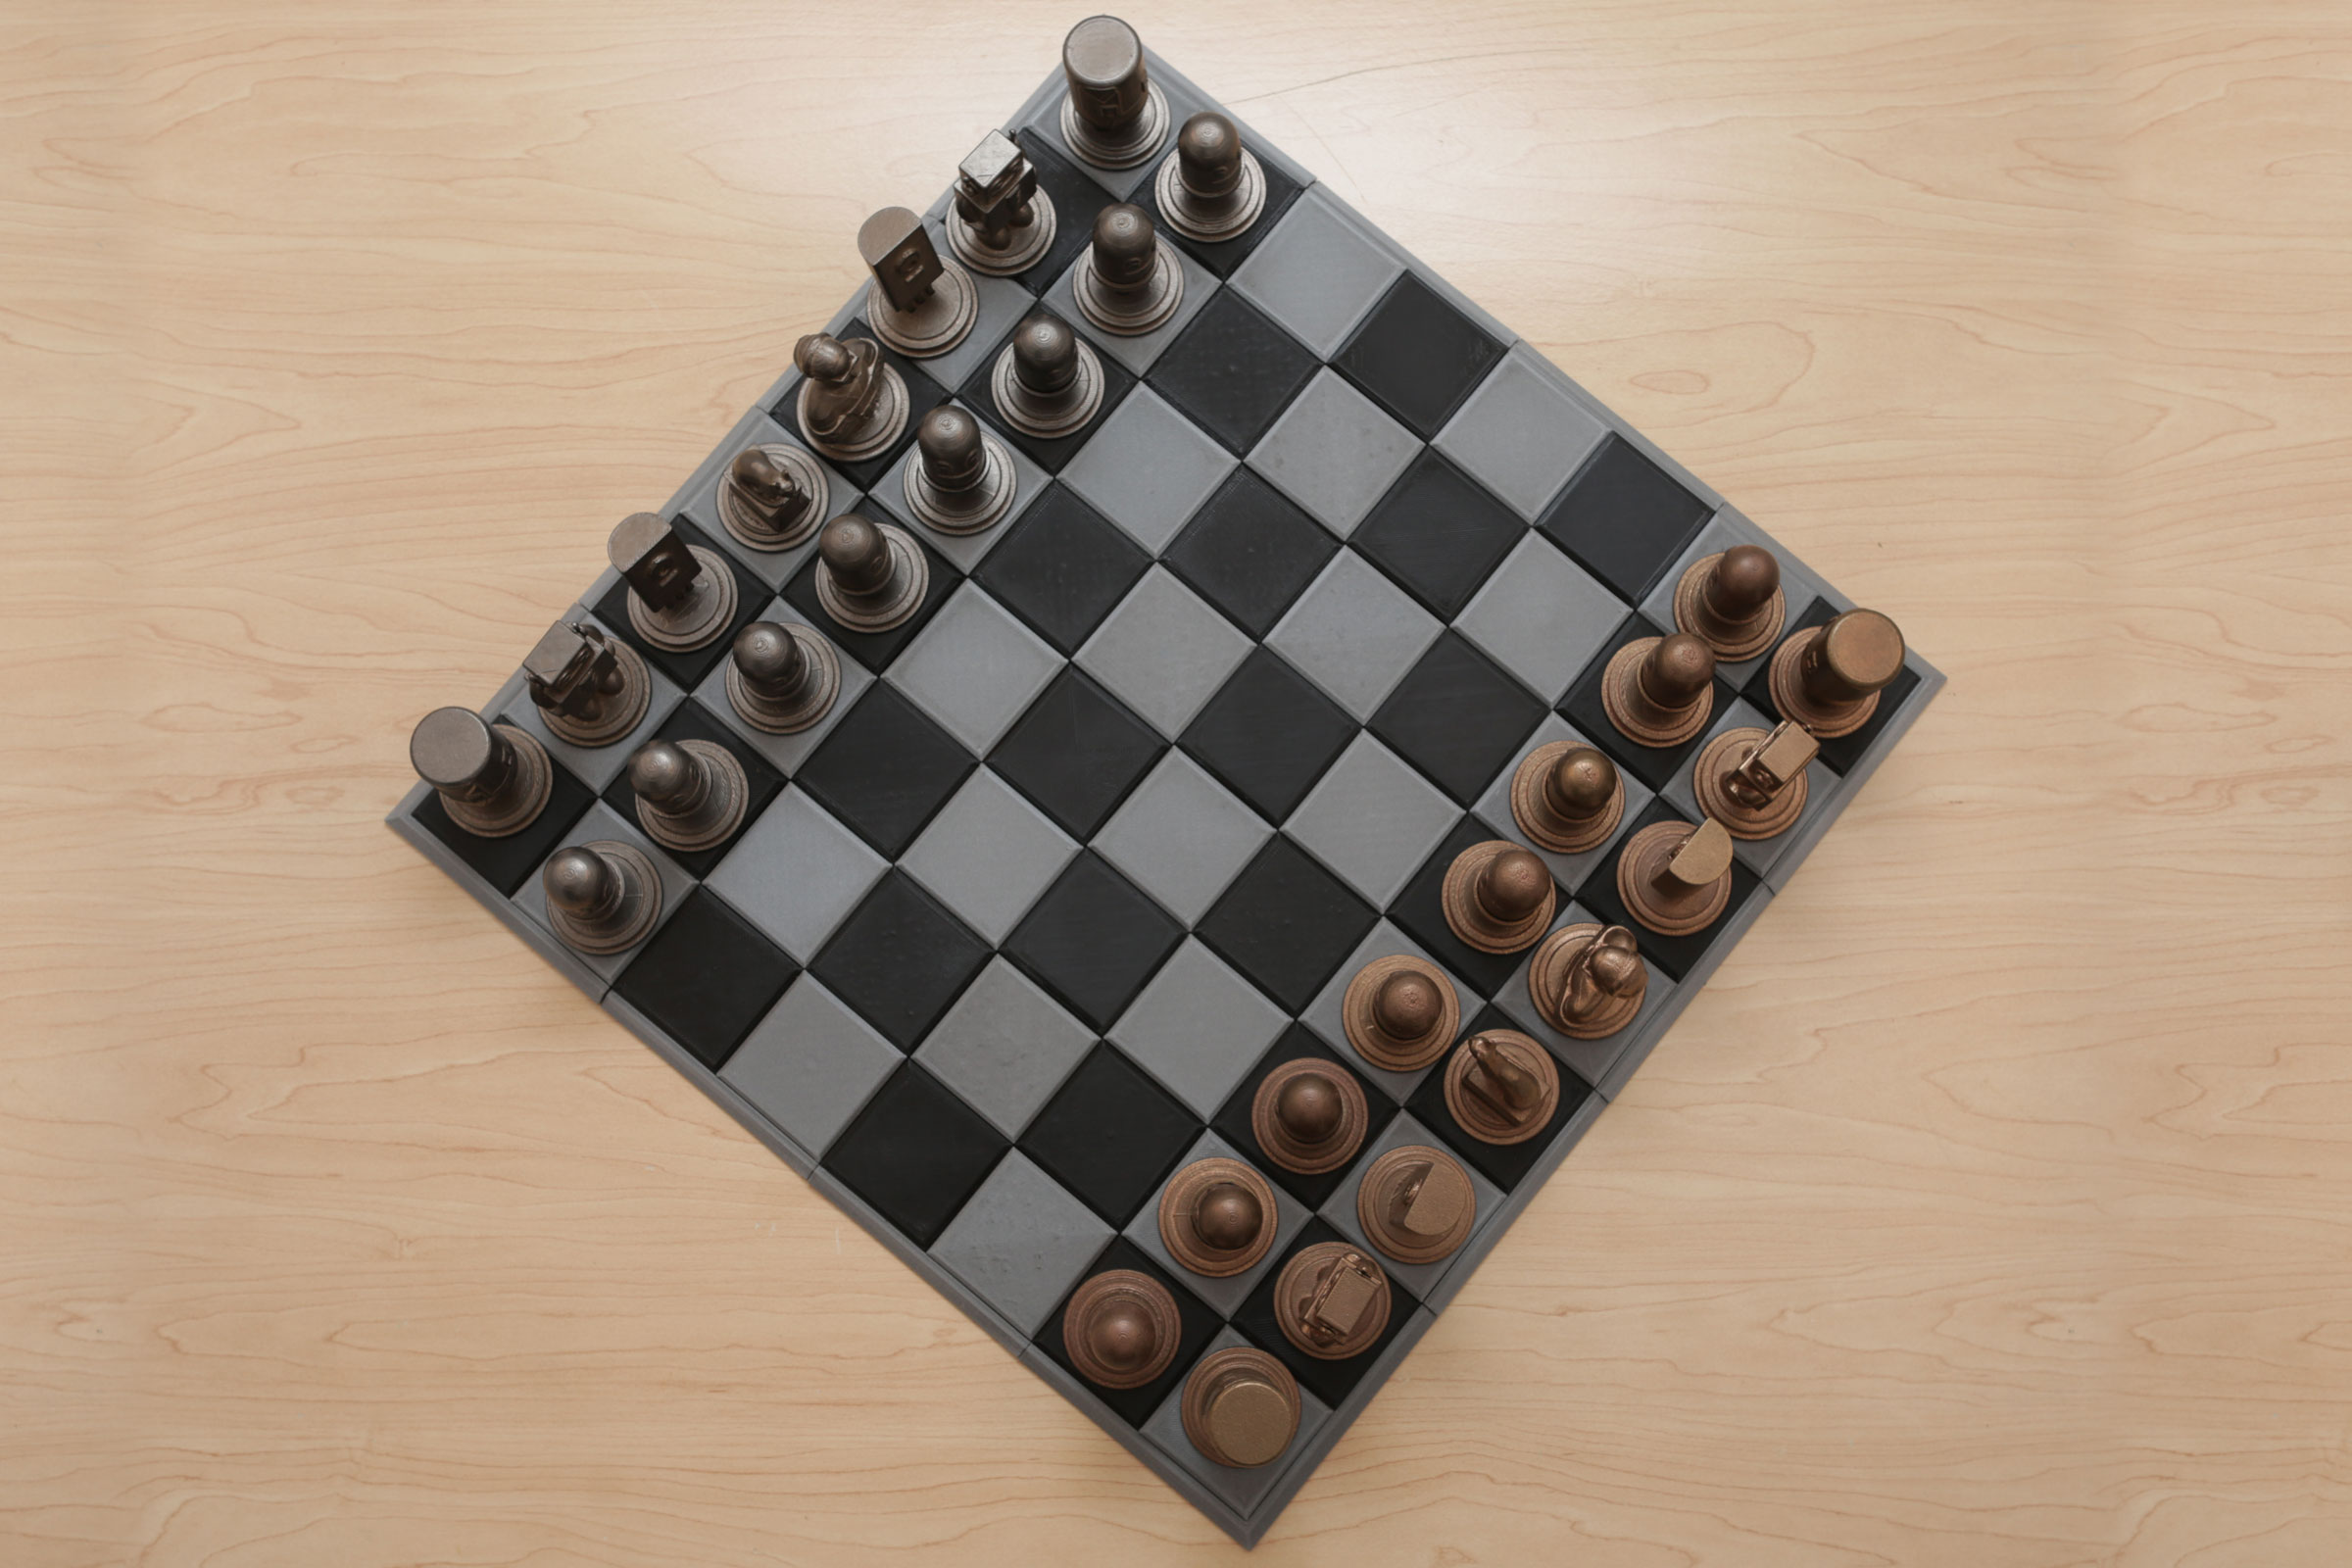 Adafruit 3D Printed Chess Set